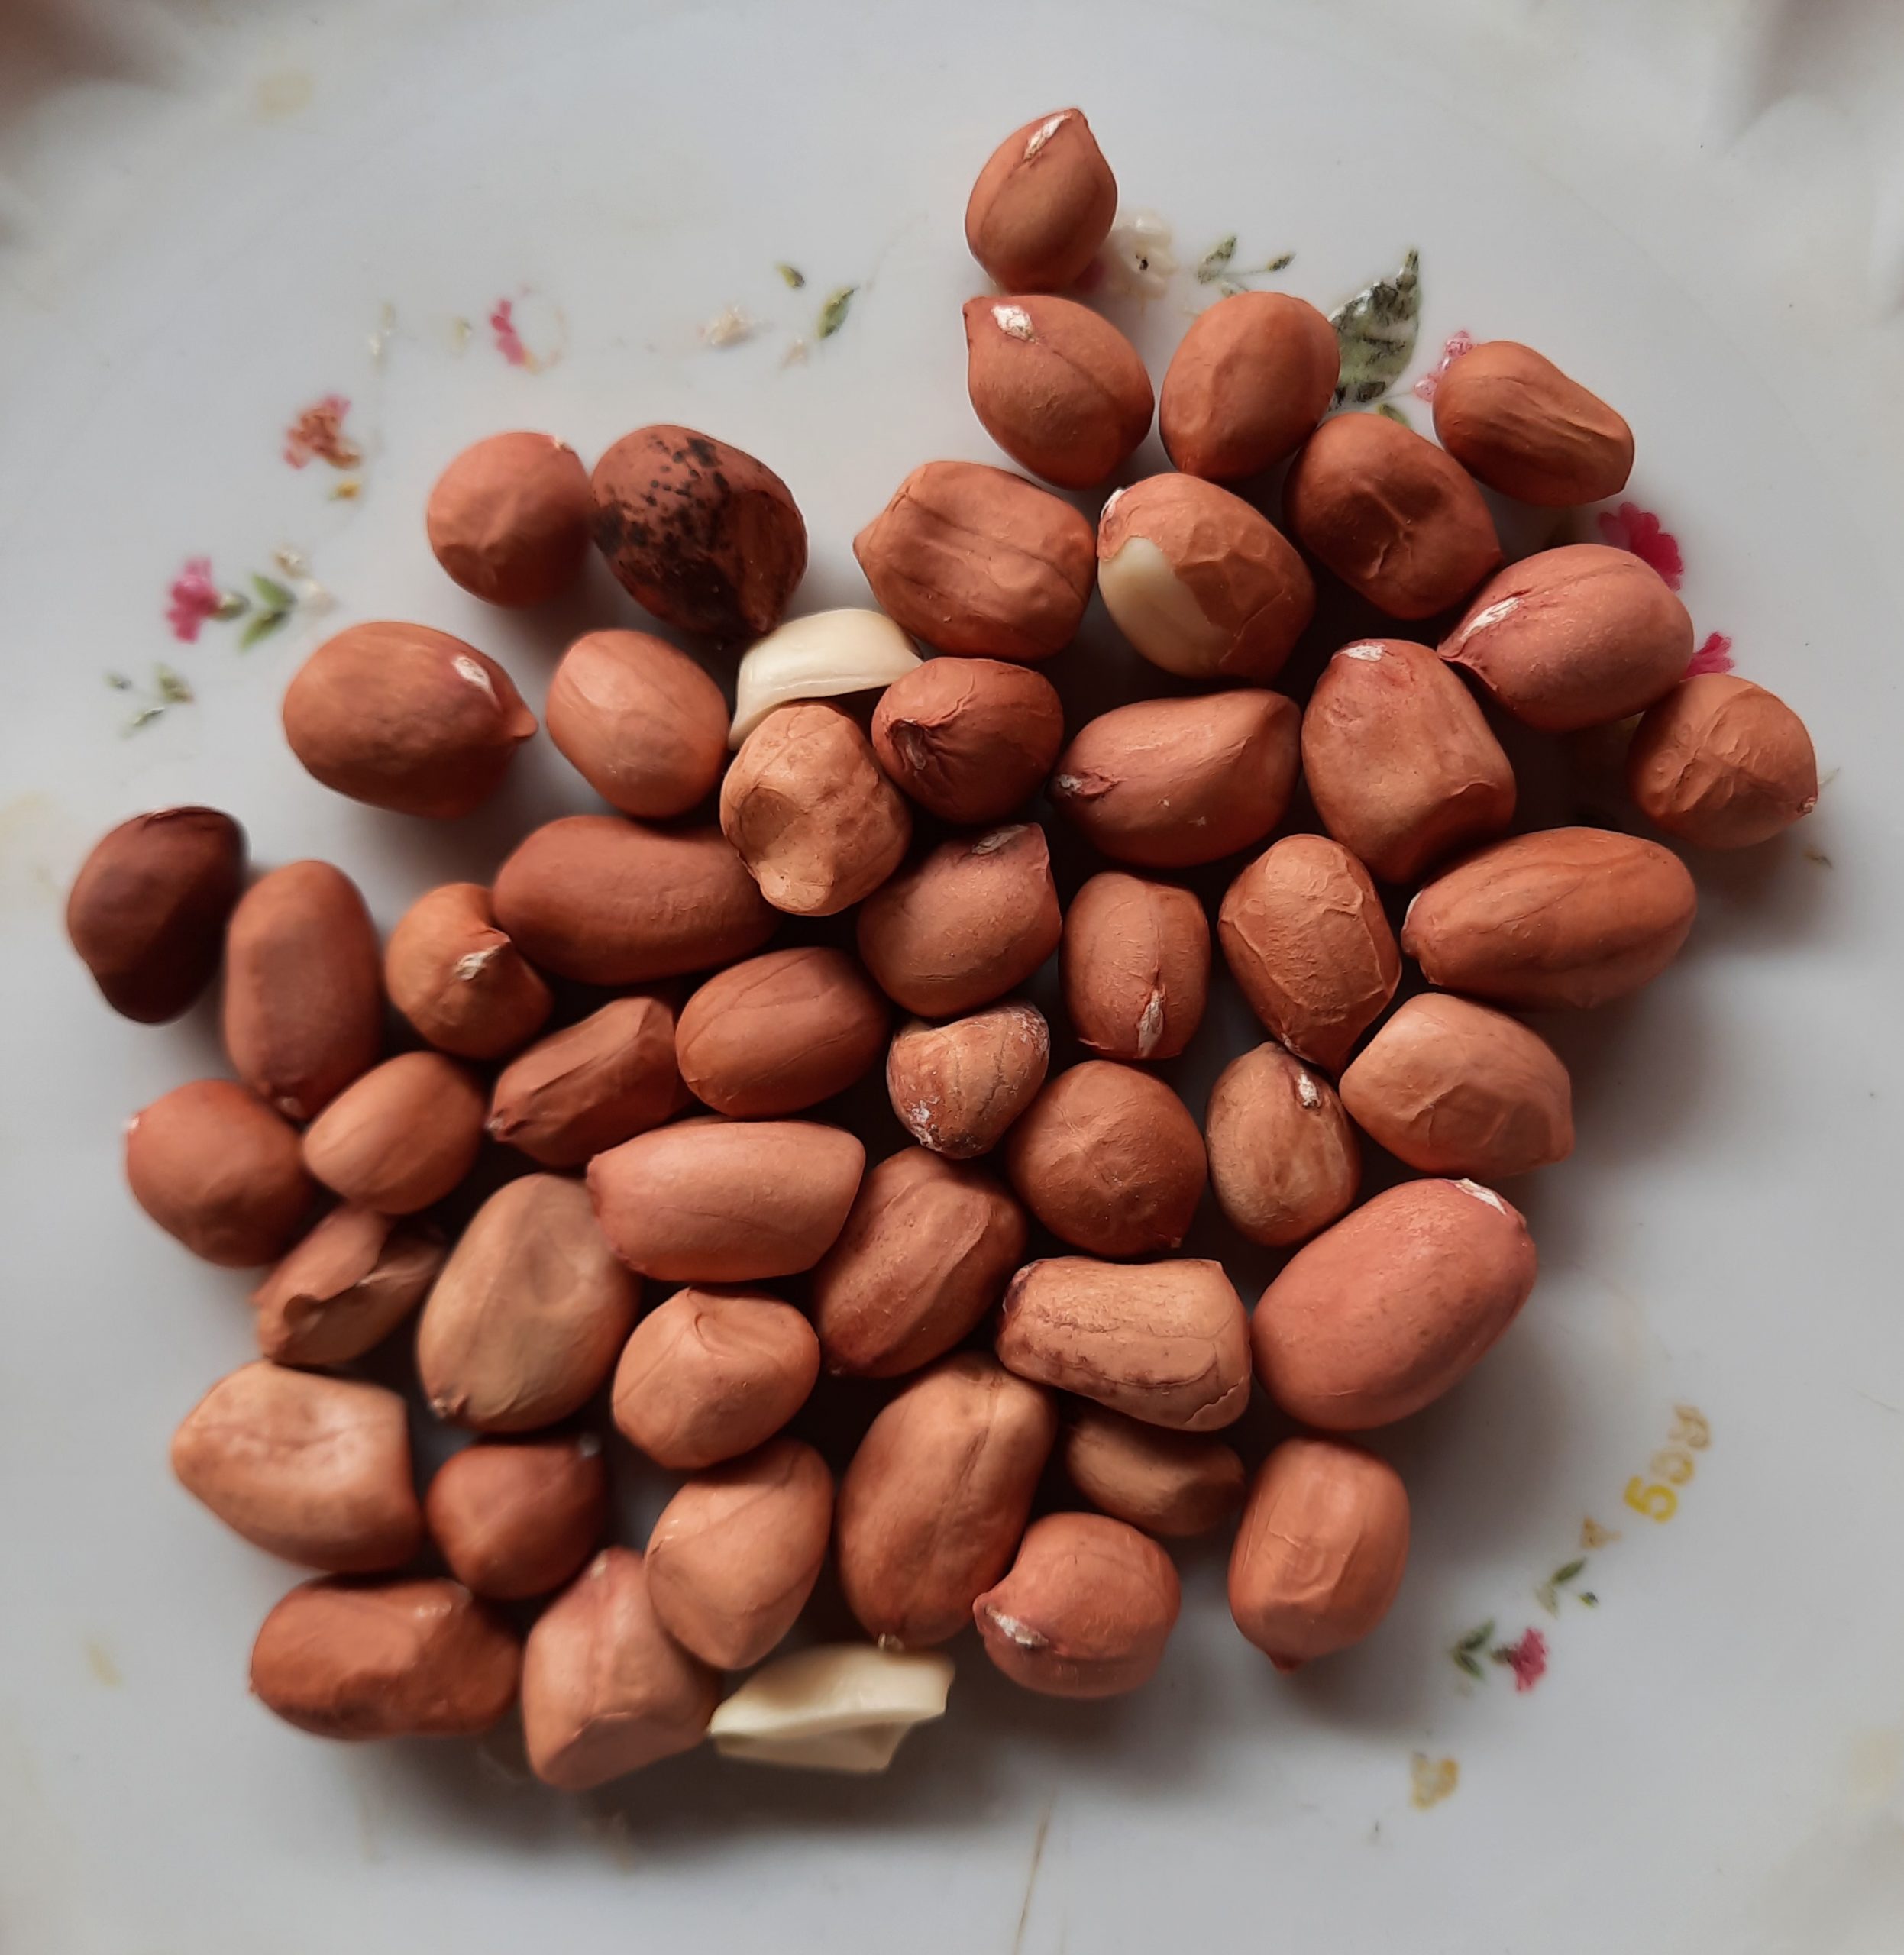 Seeds of peanut